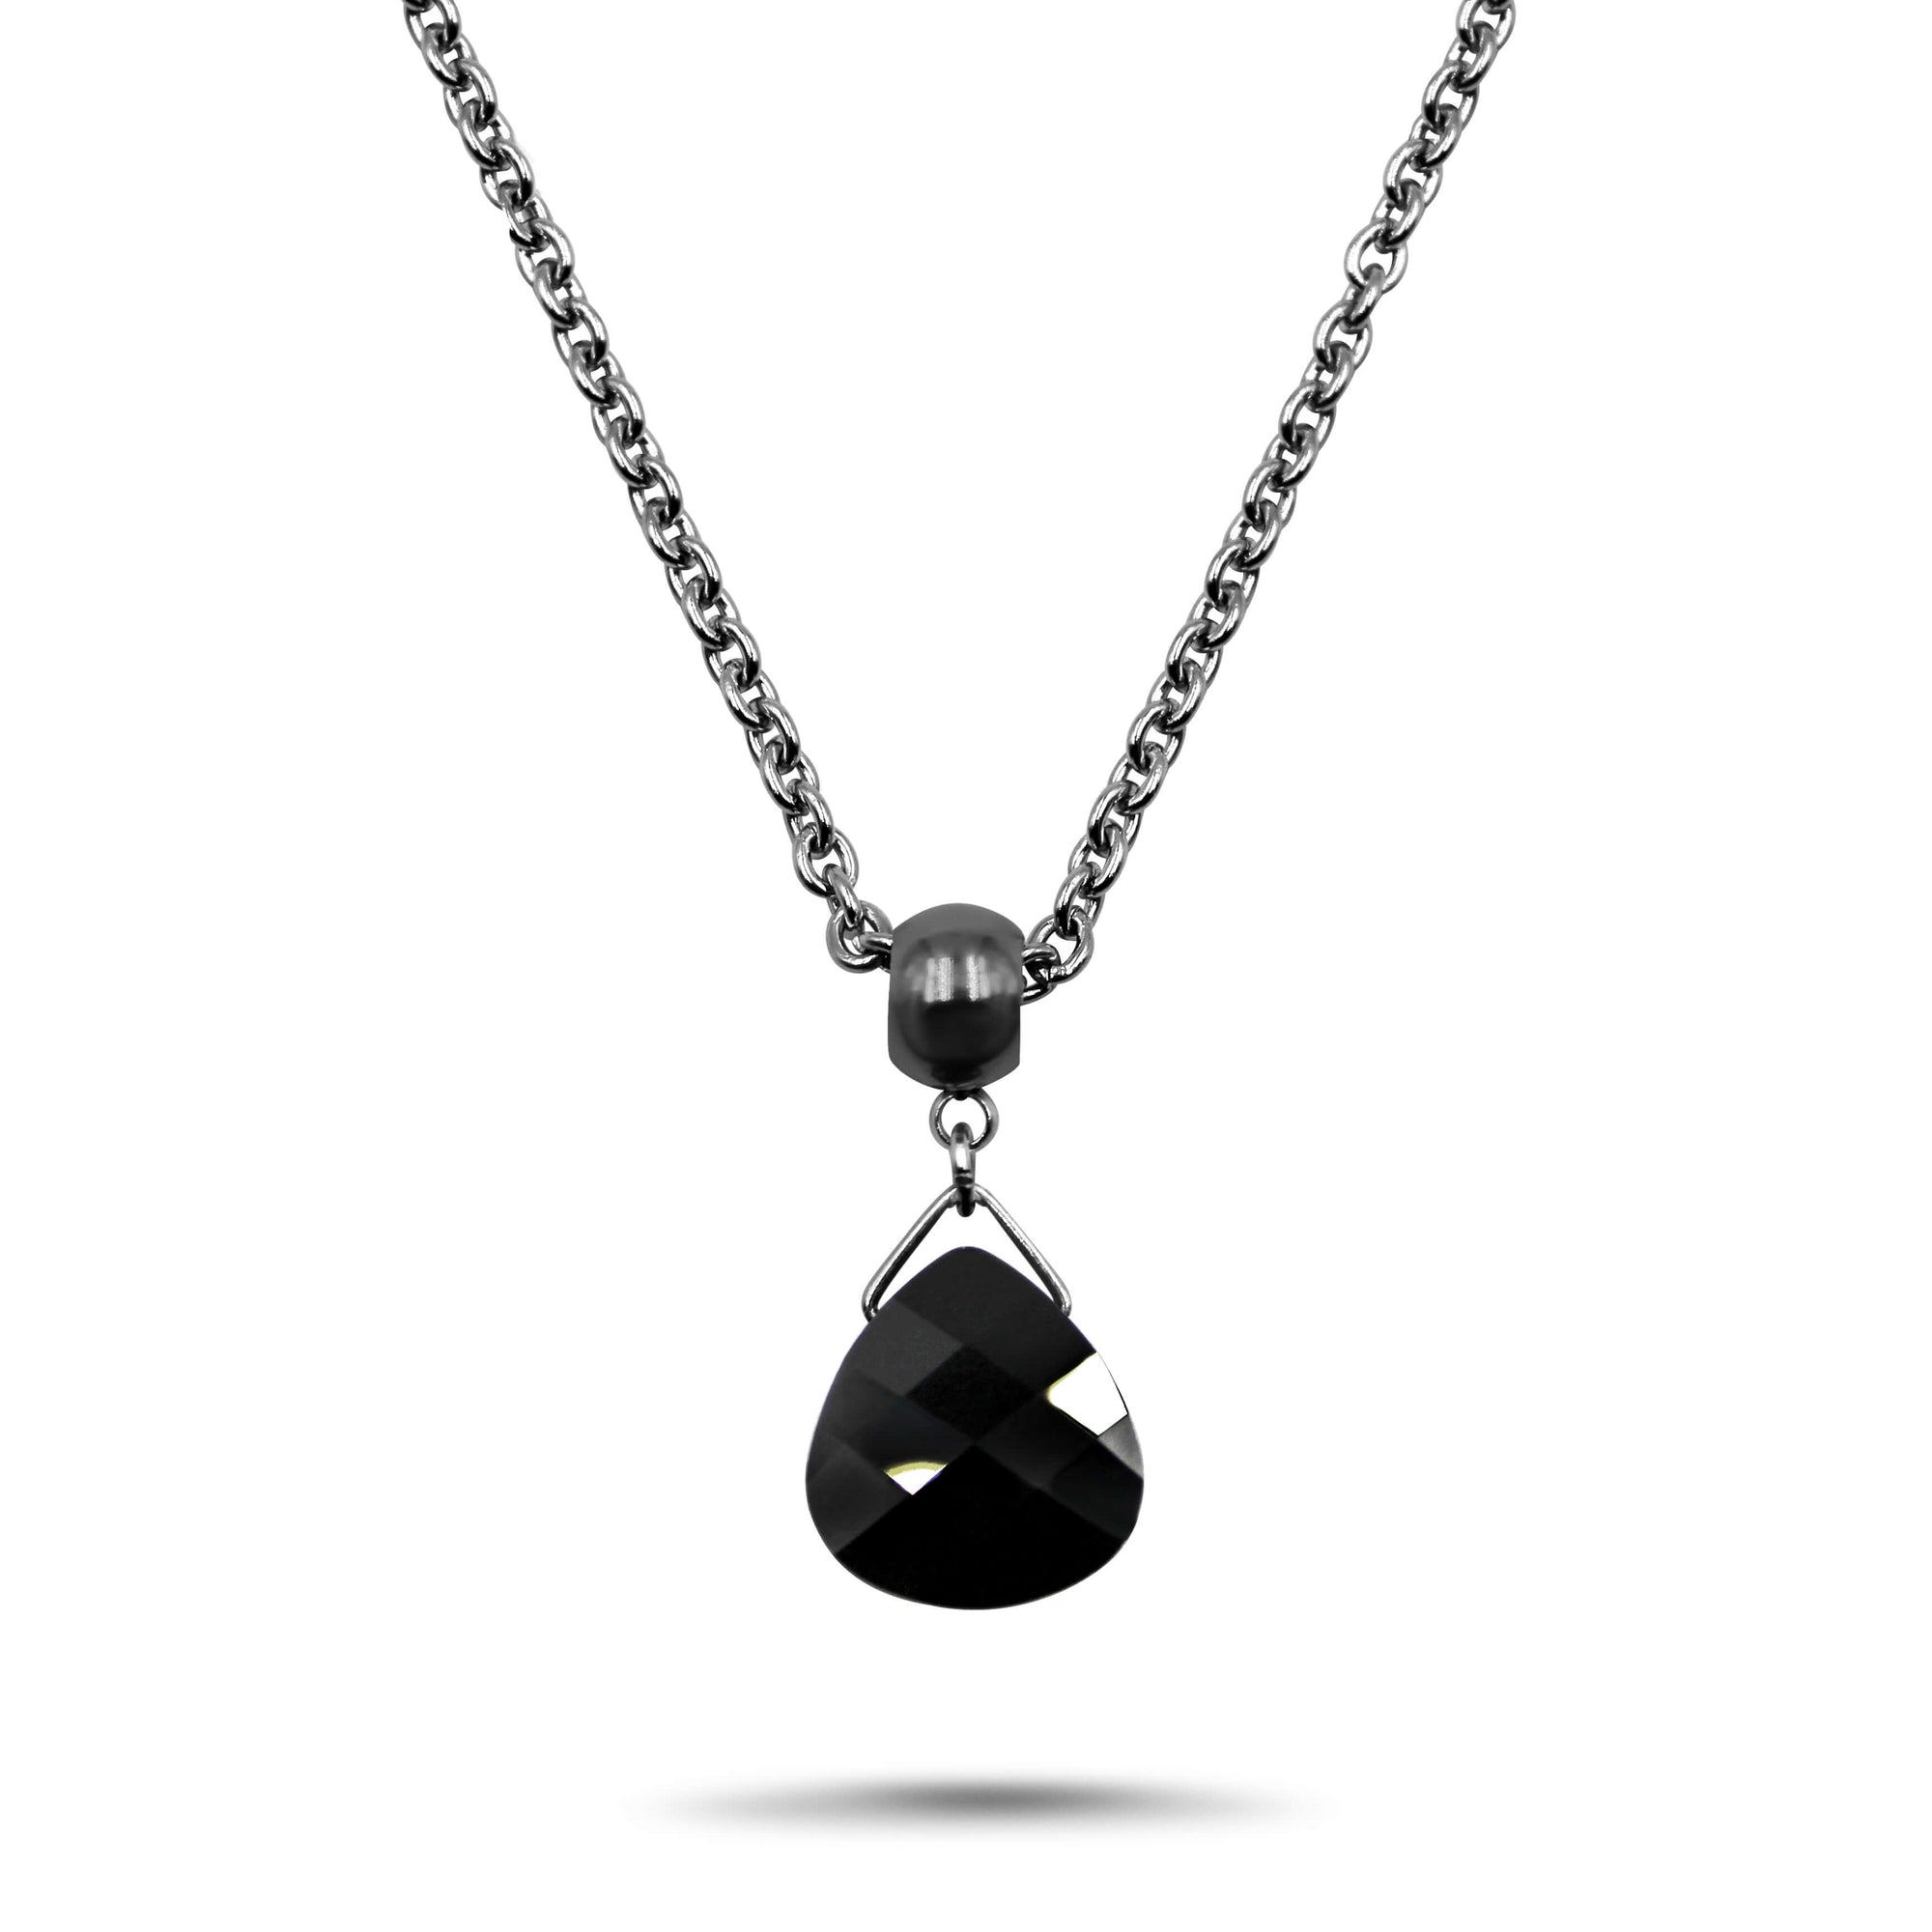 Jet Black Swarovski Crystal Necklace - Creative Jewelry by Marcia - Asymmetrical Jewelry - Timeless Jewelry